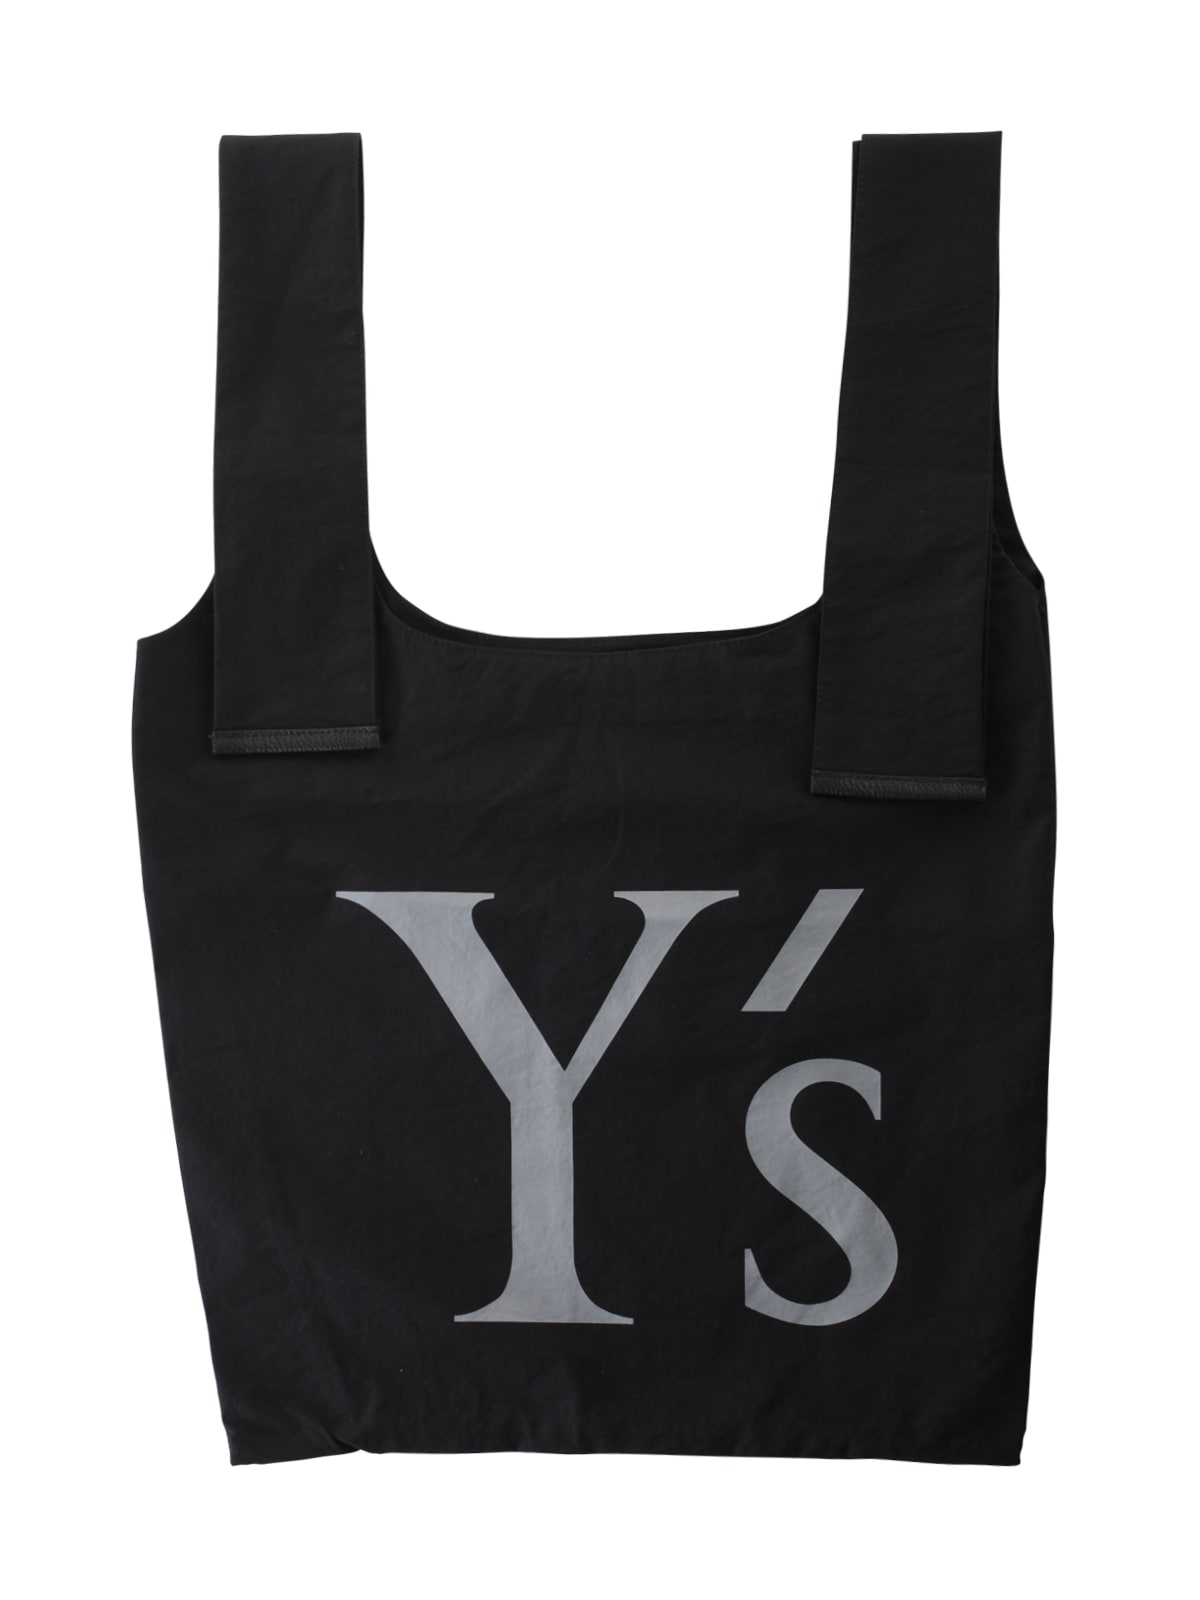 Y's Logo Tote Bag